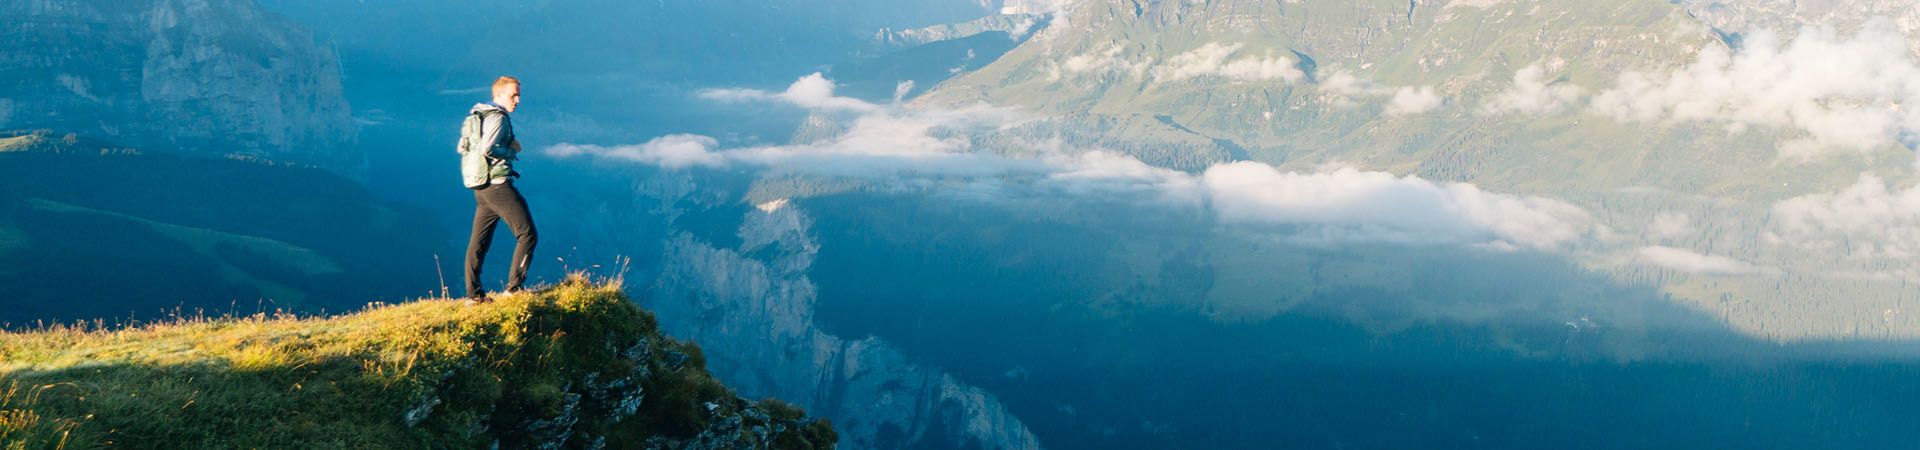 Fernwanderung – Fernwanderer genießt die Aussicht in den Bergen.